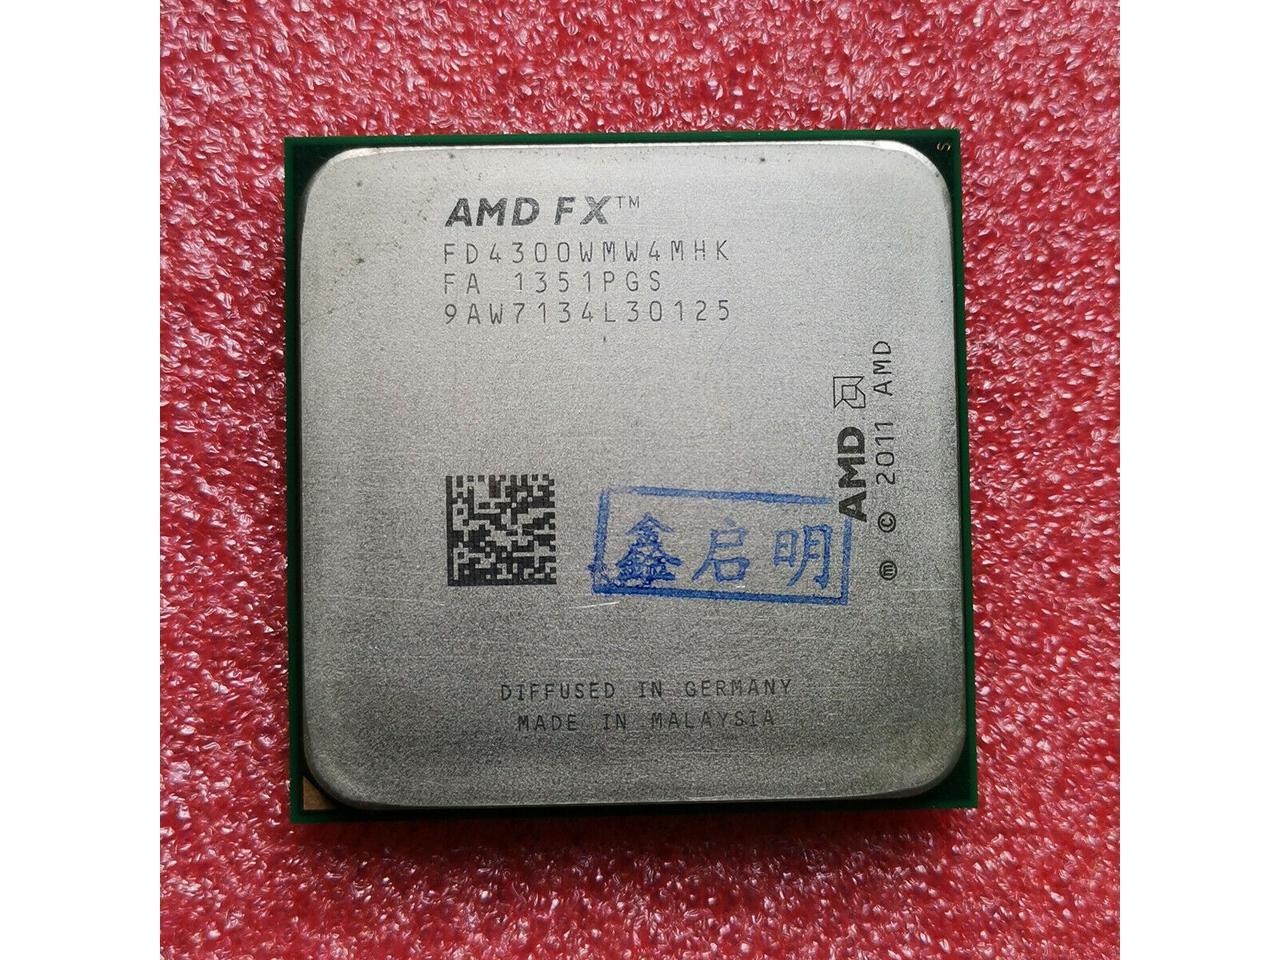 AMD FX-4300 Vishera Quad-Core 3.8 GHz Socket AM3+ 95W FD4300WMHKBOX Desktop Processor